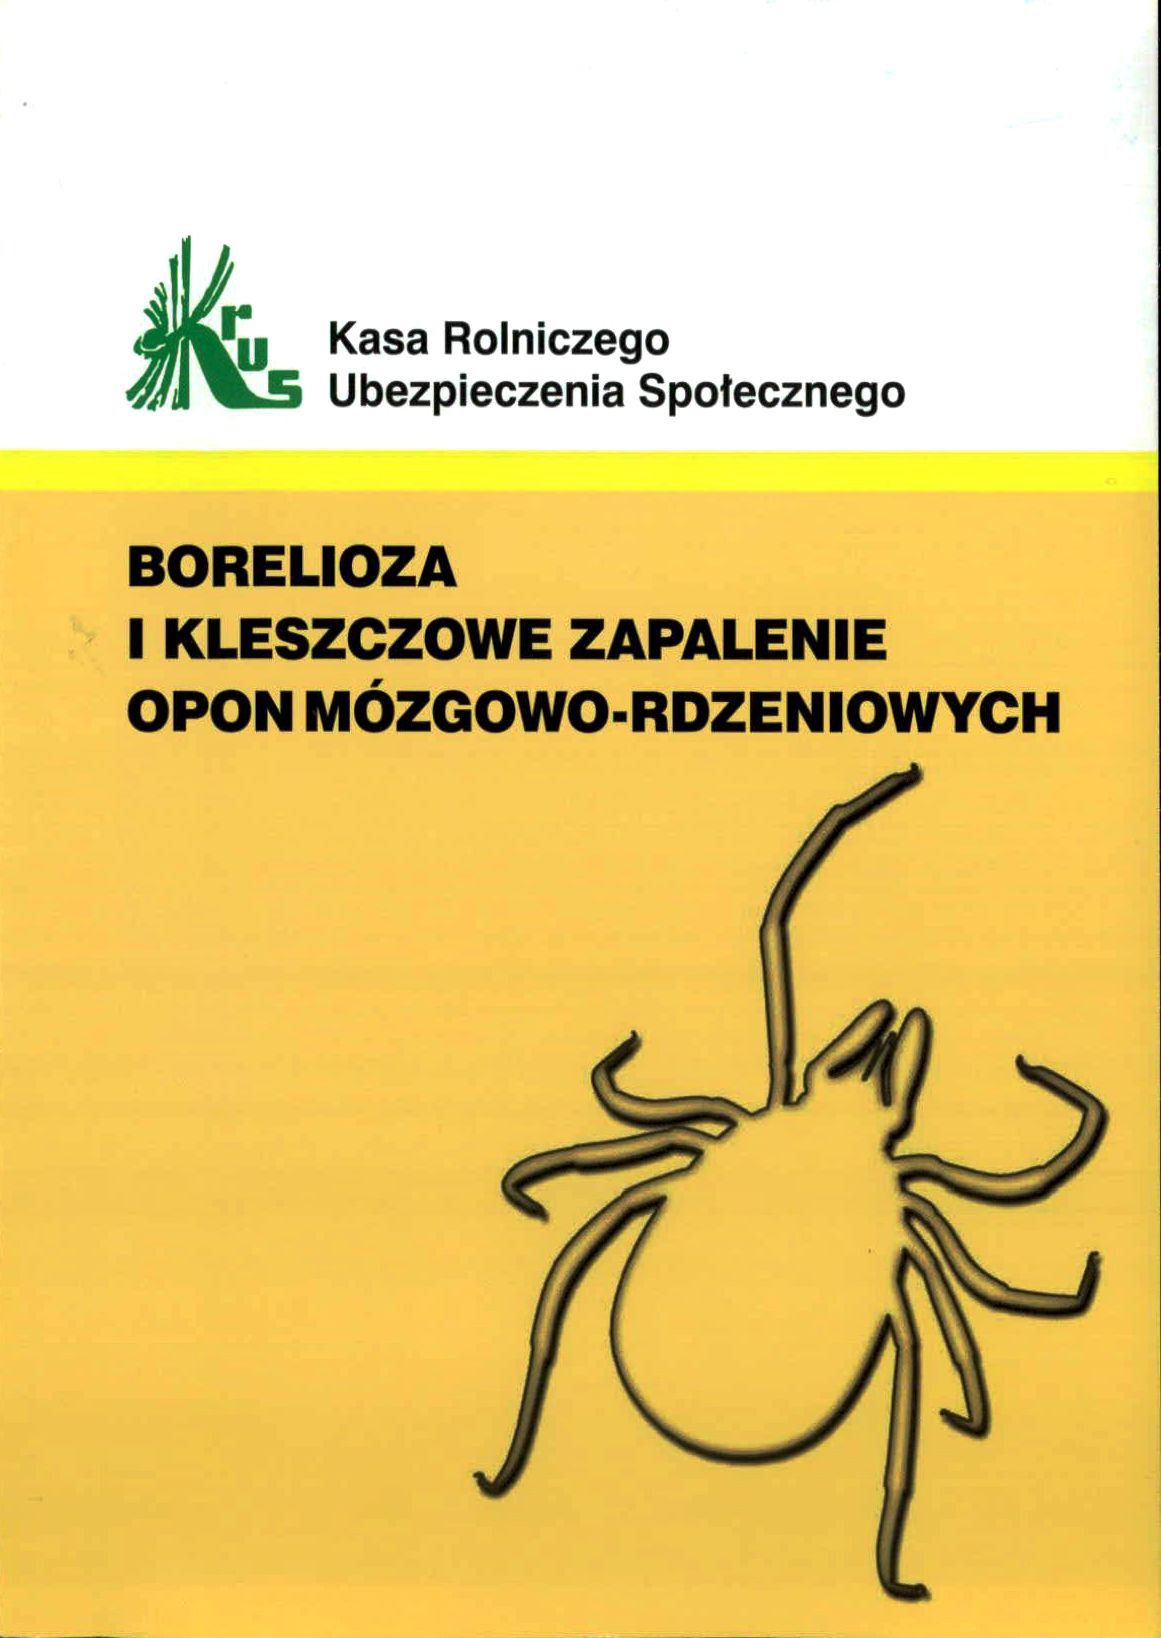 okladka broszury KRUS 002